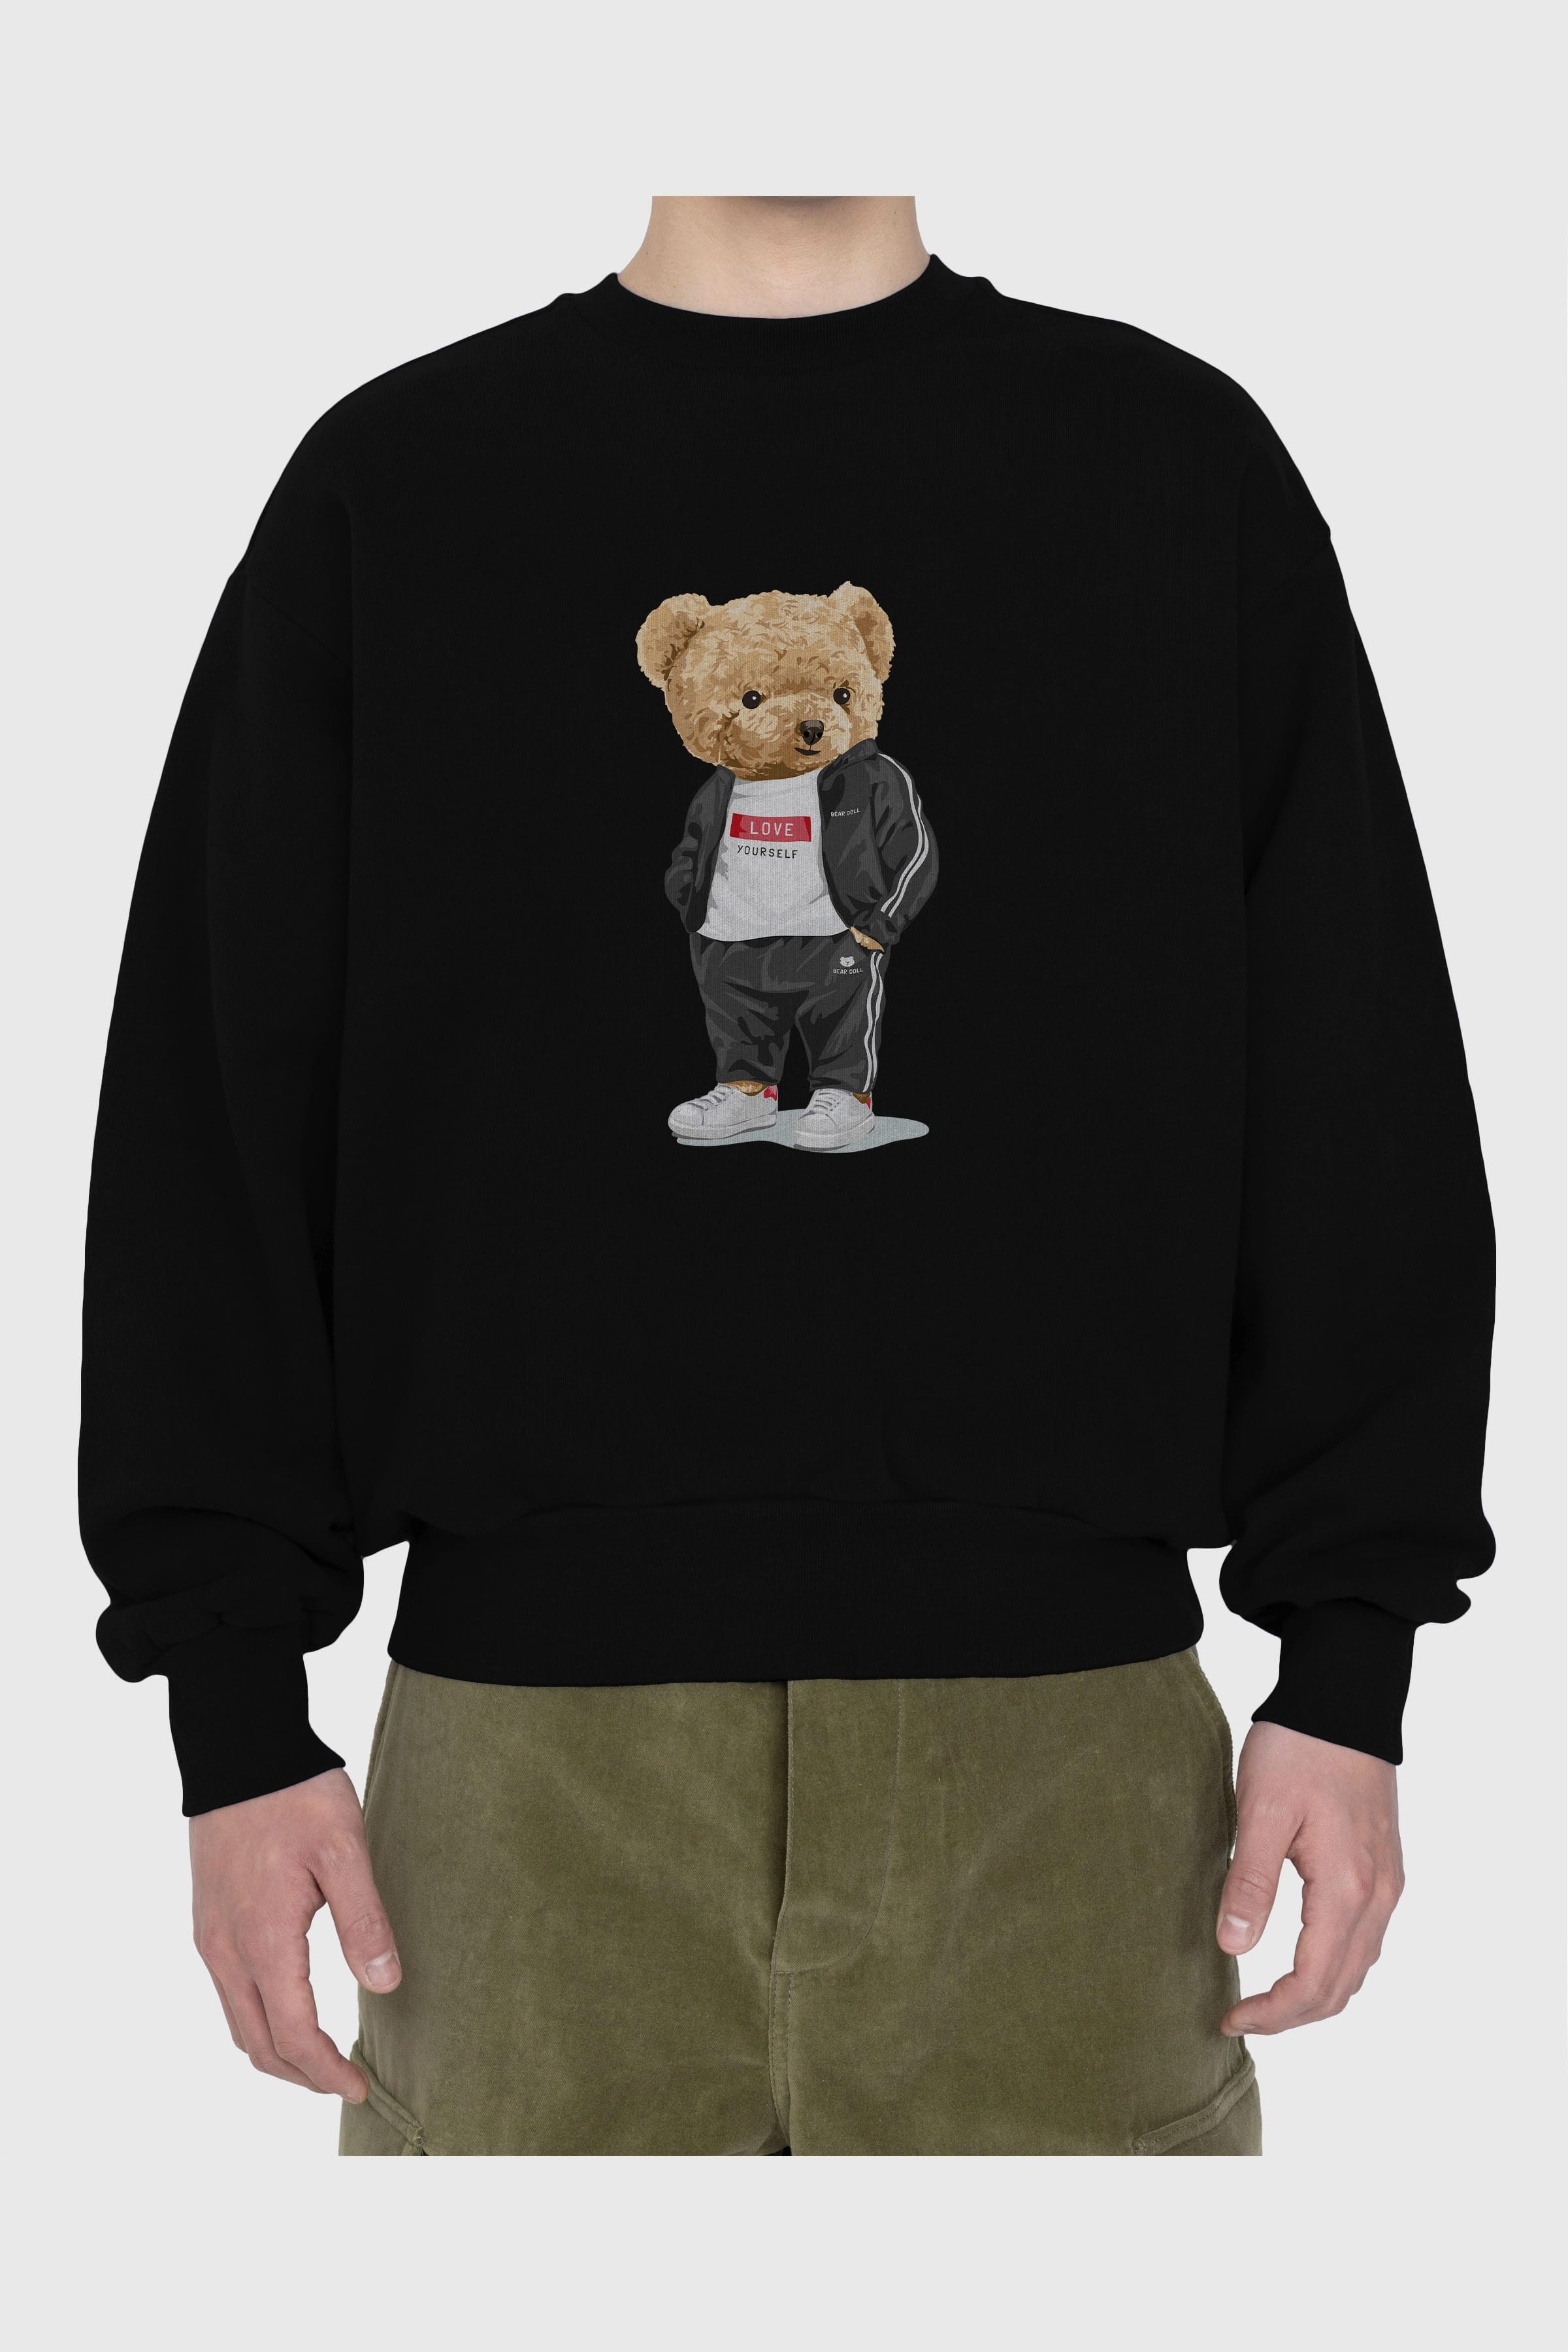 Teddy Bear Love Yourself Ön Baskılı Oversize Sweatshirt Erkek Kadın Unisex